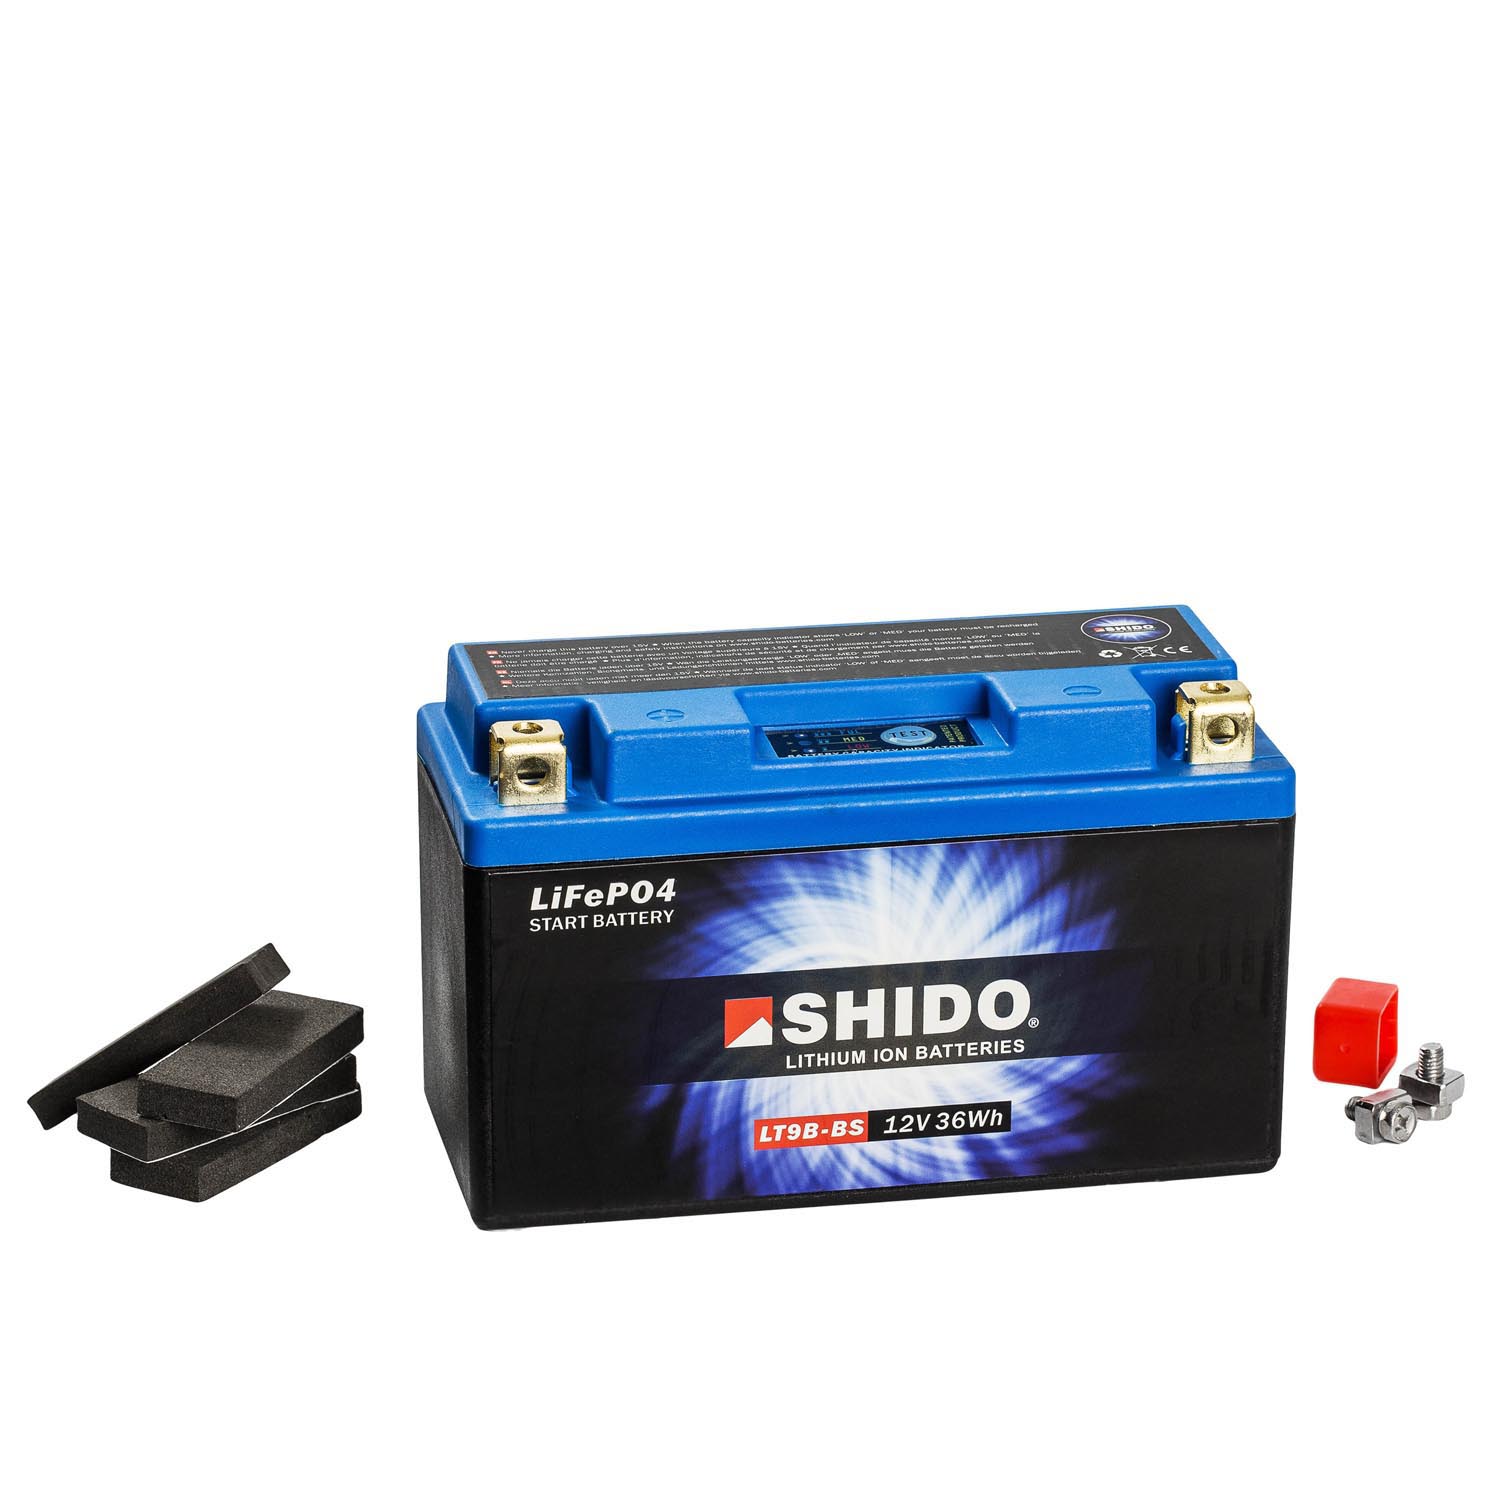 Shido Lithium Motorradbatterie LiFePO4 LT9B-BS 12V